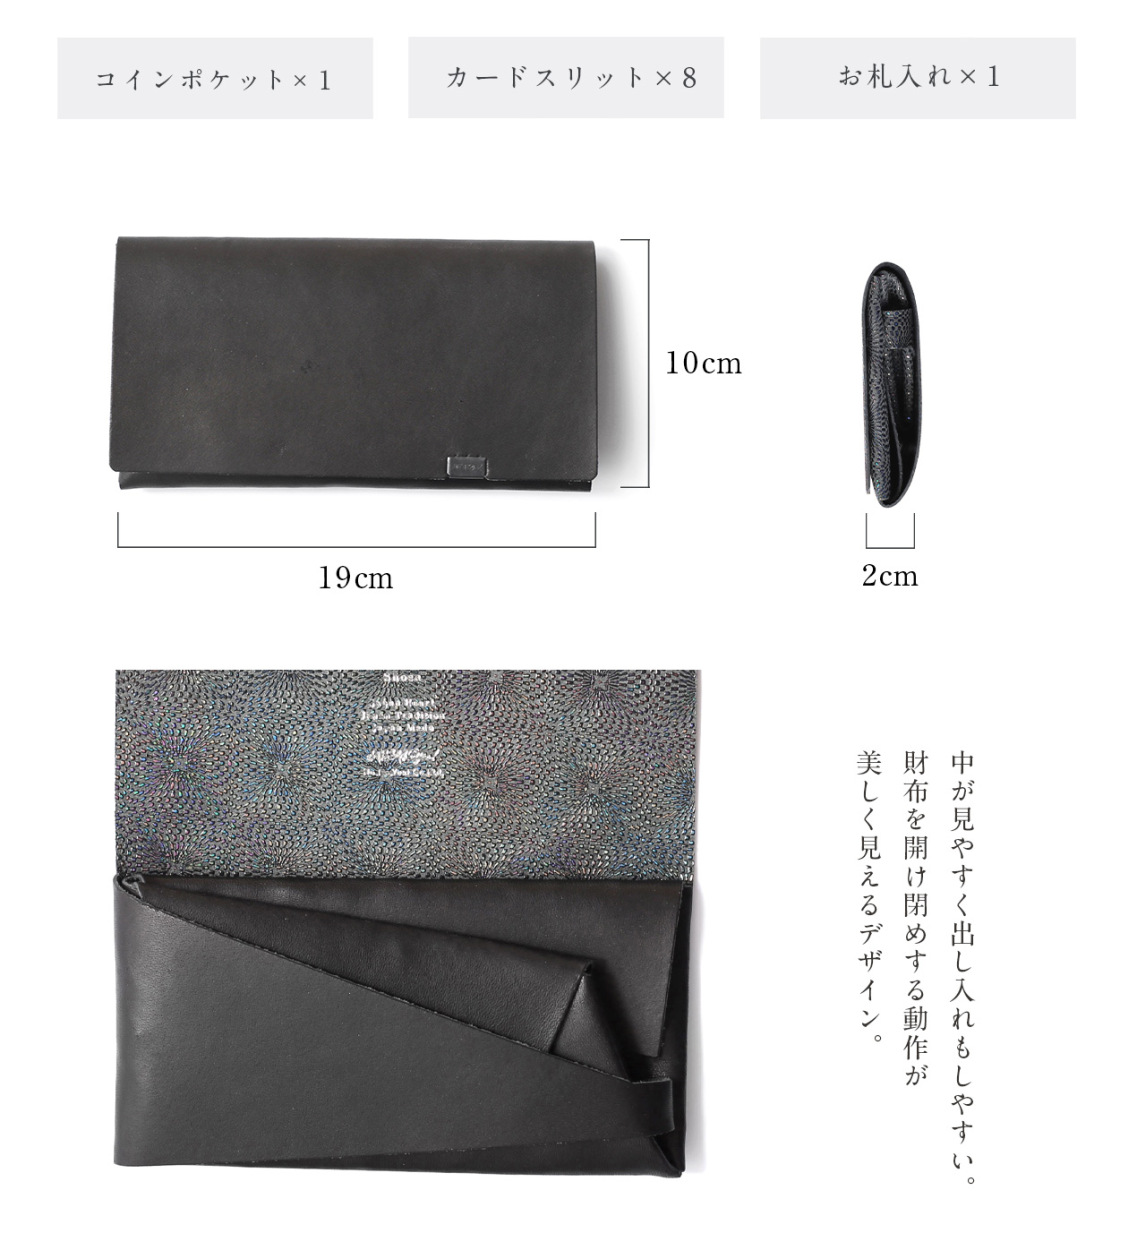 16120円 最高の品質の 財布 長財布 メンズ レディース 牛革 所作 ロング 鮫小紋 鮫小紋×ブラック